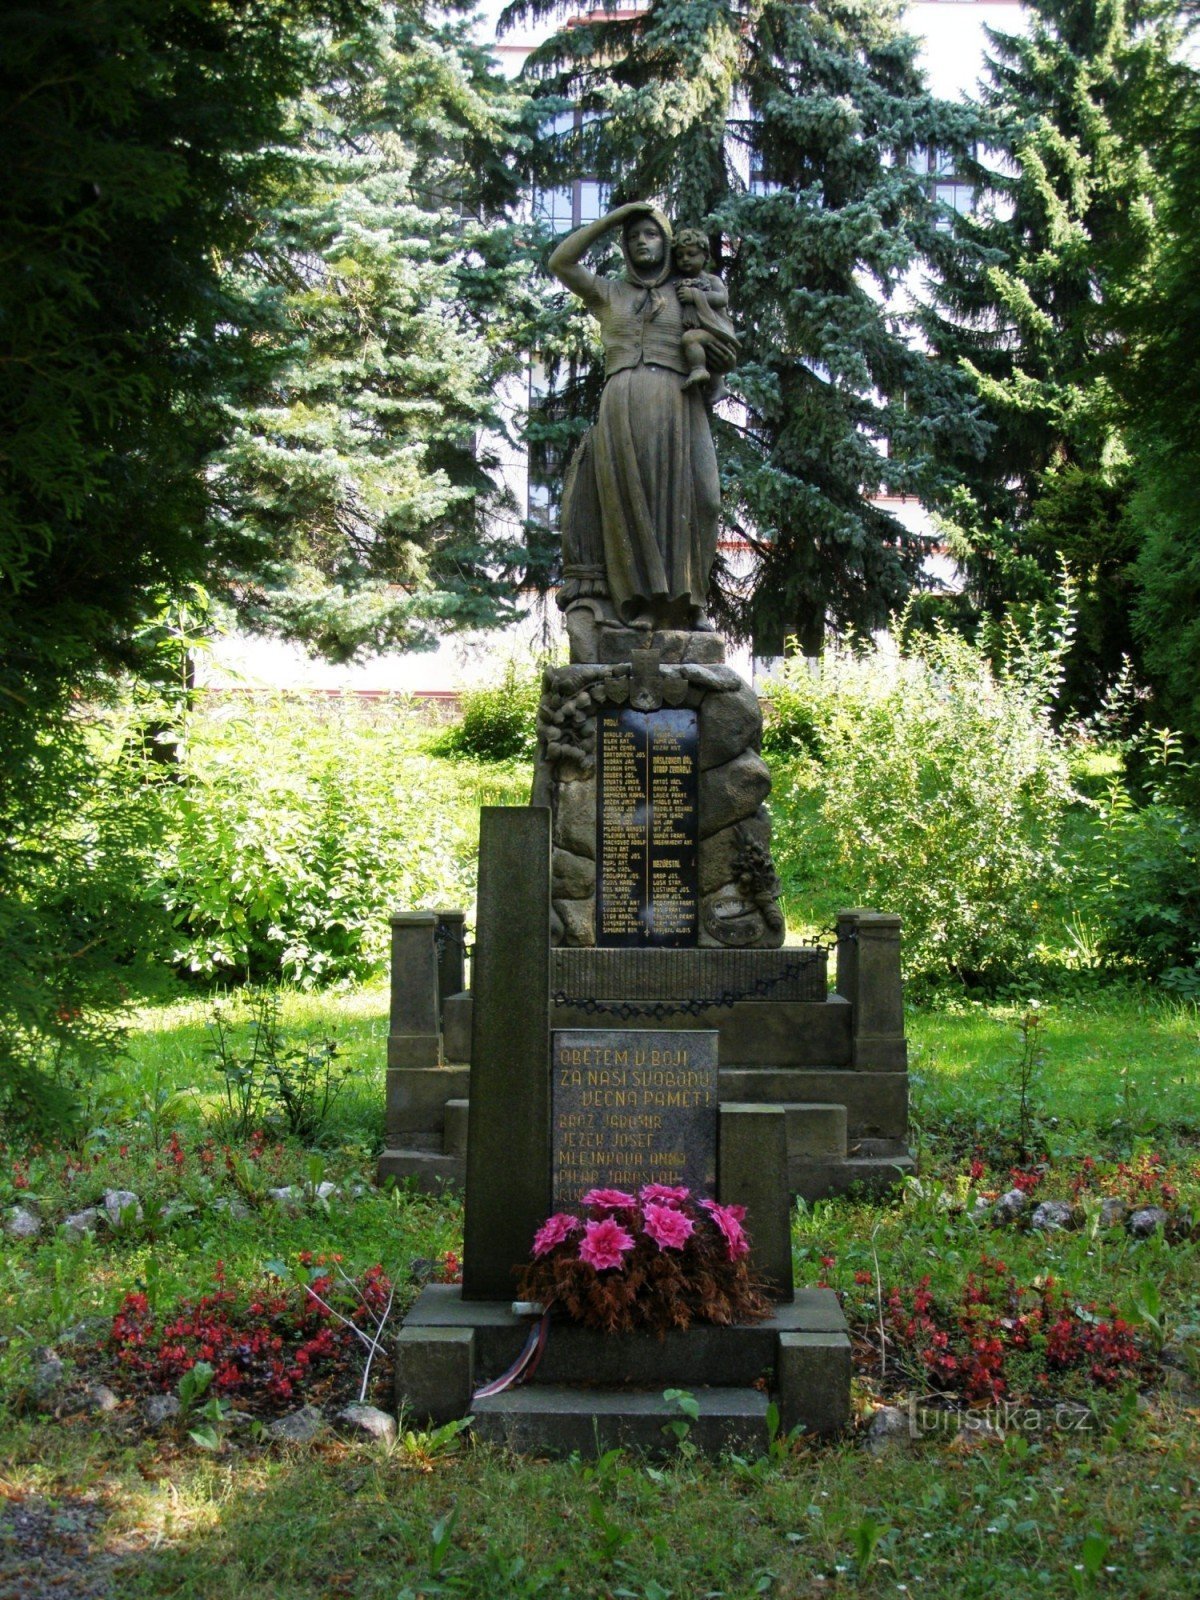 Stará Paka - tượng đài nạn nhân của chiến tranh